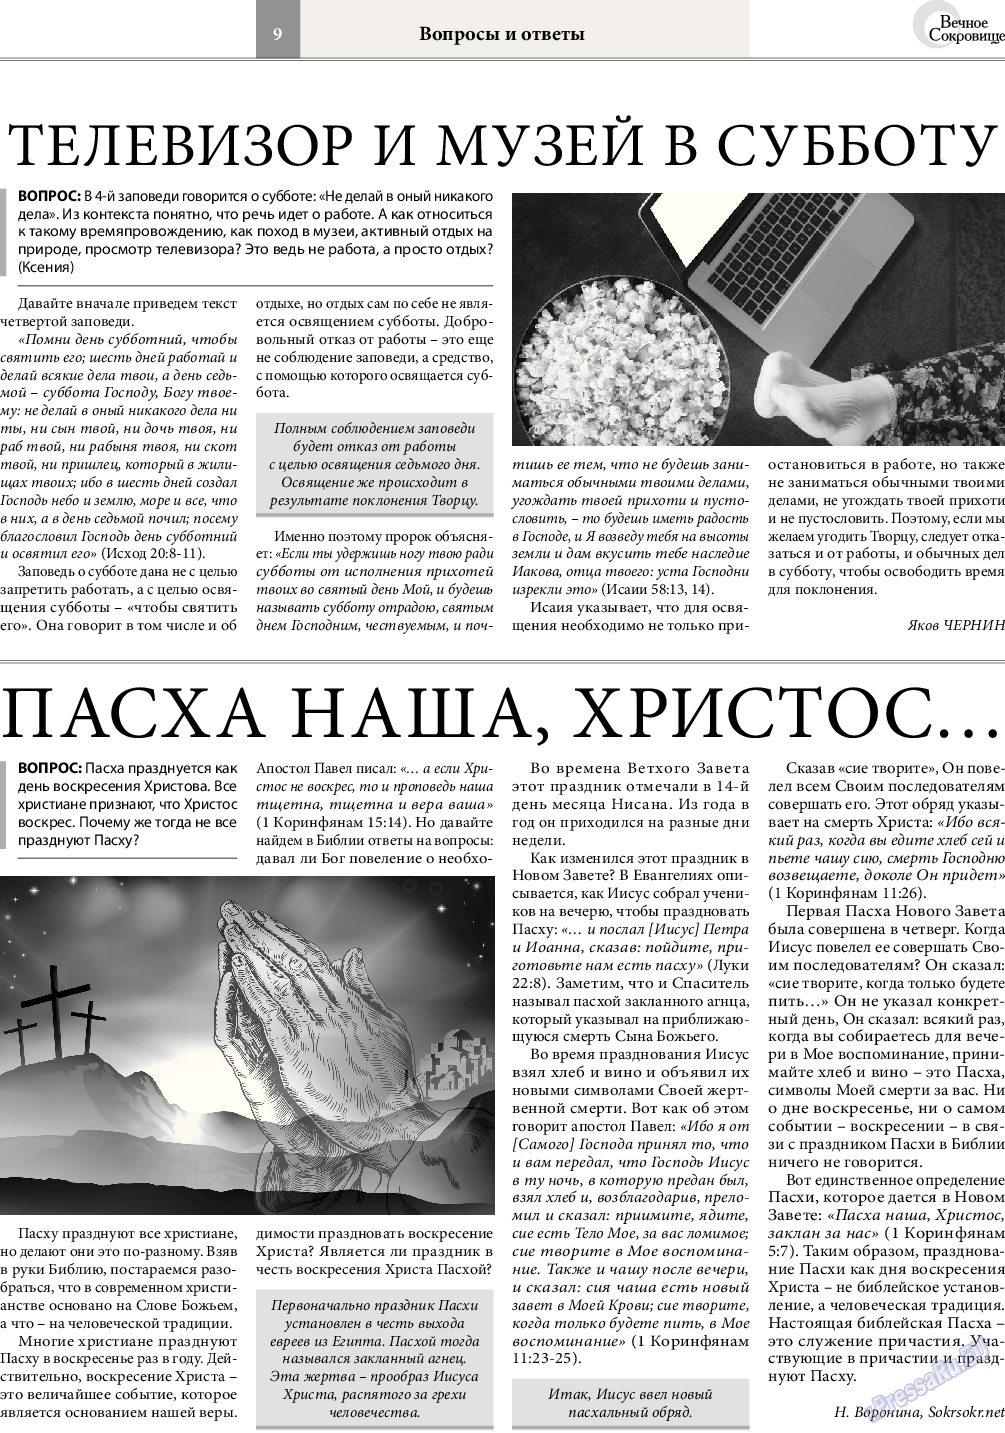 Вечное сокровище (газета). 2017 год, номер 2, стр. 9